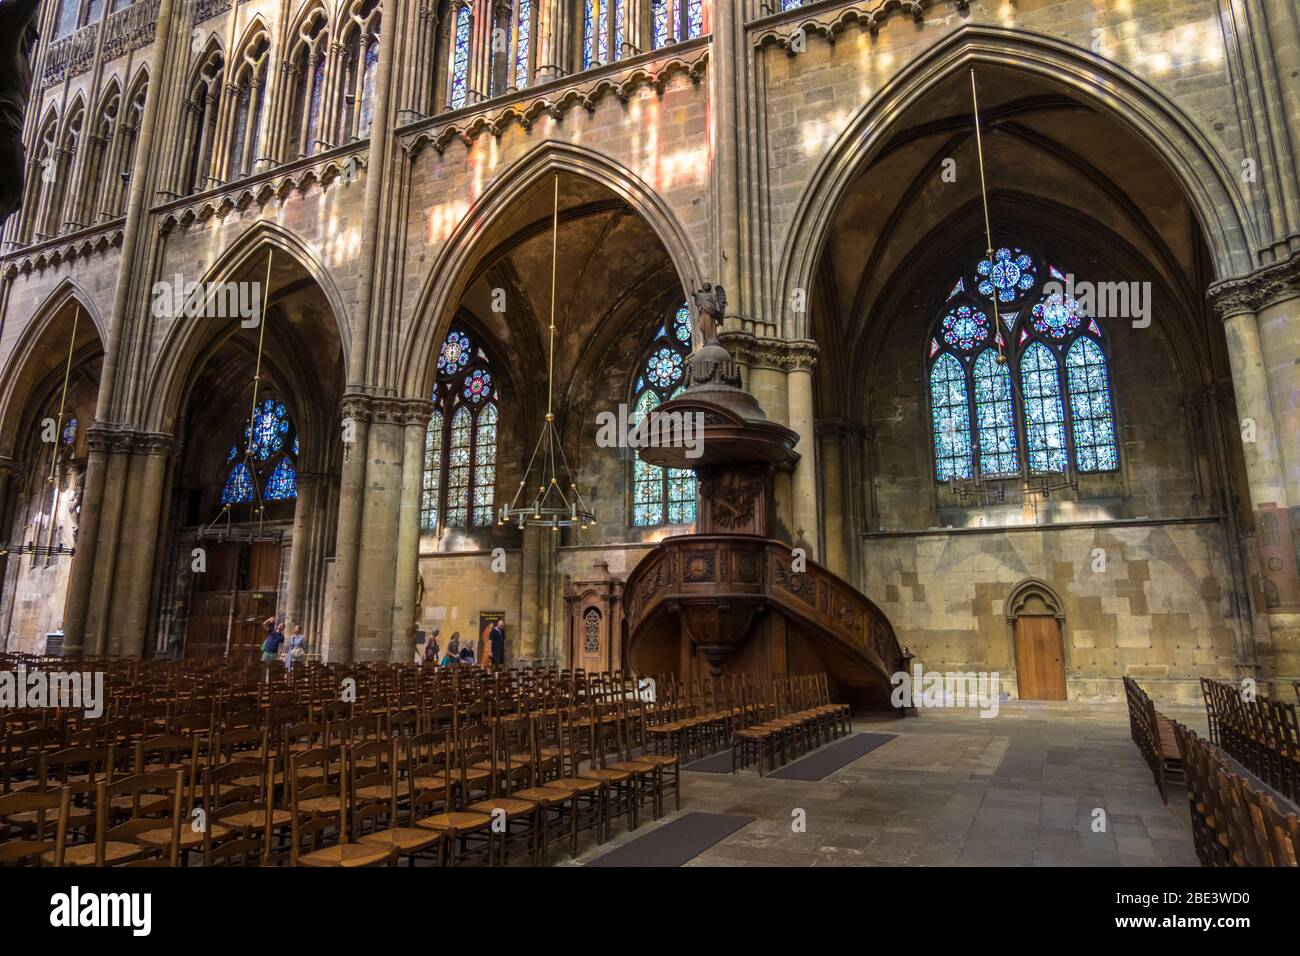 Metz, Frankreich - 31. August 2019: Innenansicht der Kathedrale Saint Etienne oder der Kathedrale Saint Stephen in Metz, Lothringen, Frankreich Stockfoto